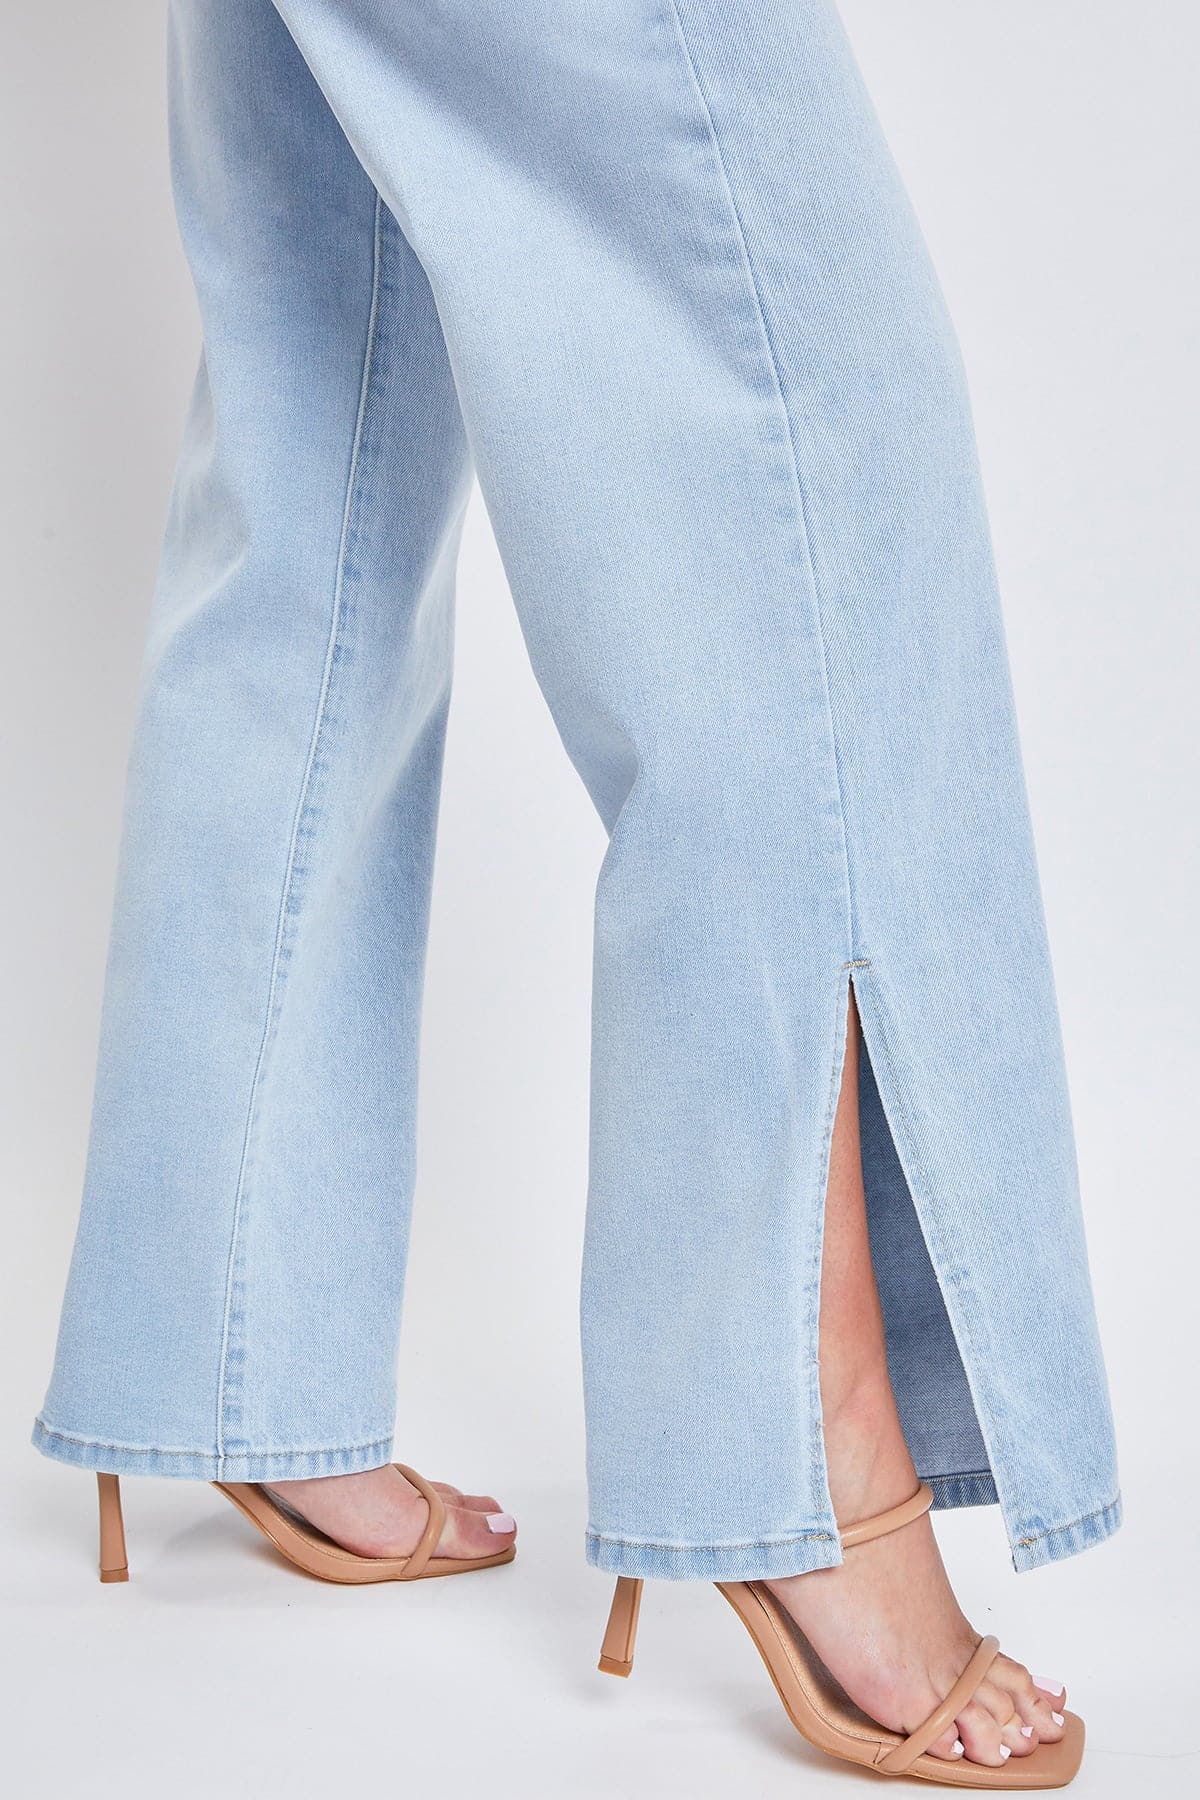 Women’s Dream 90s Straight Leg Slit Jeans